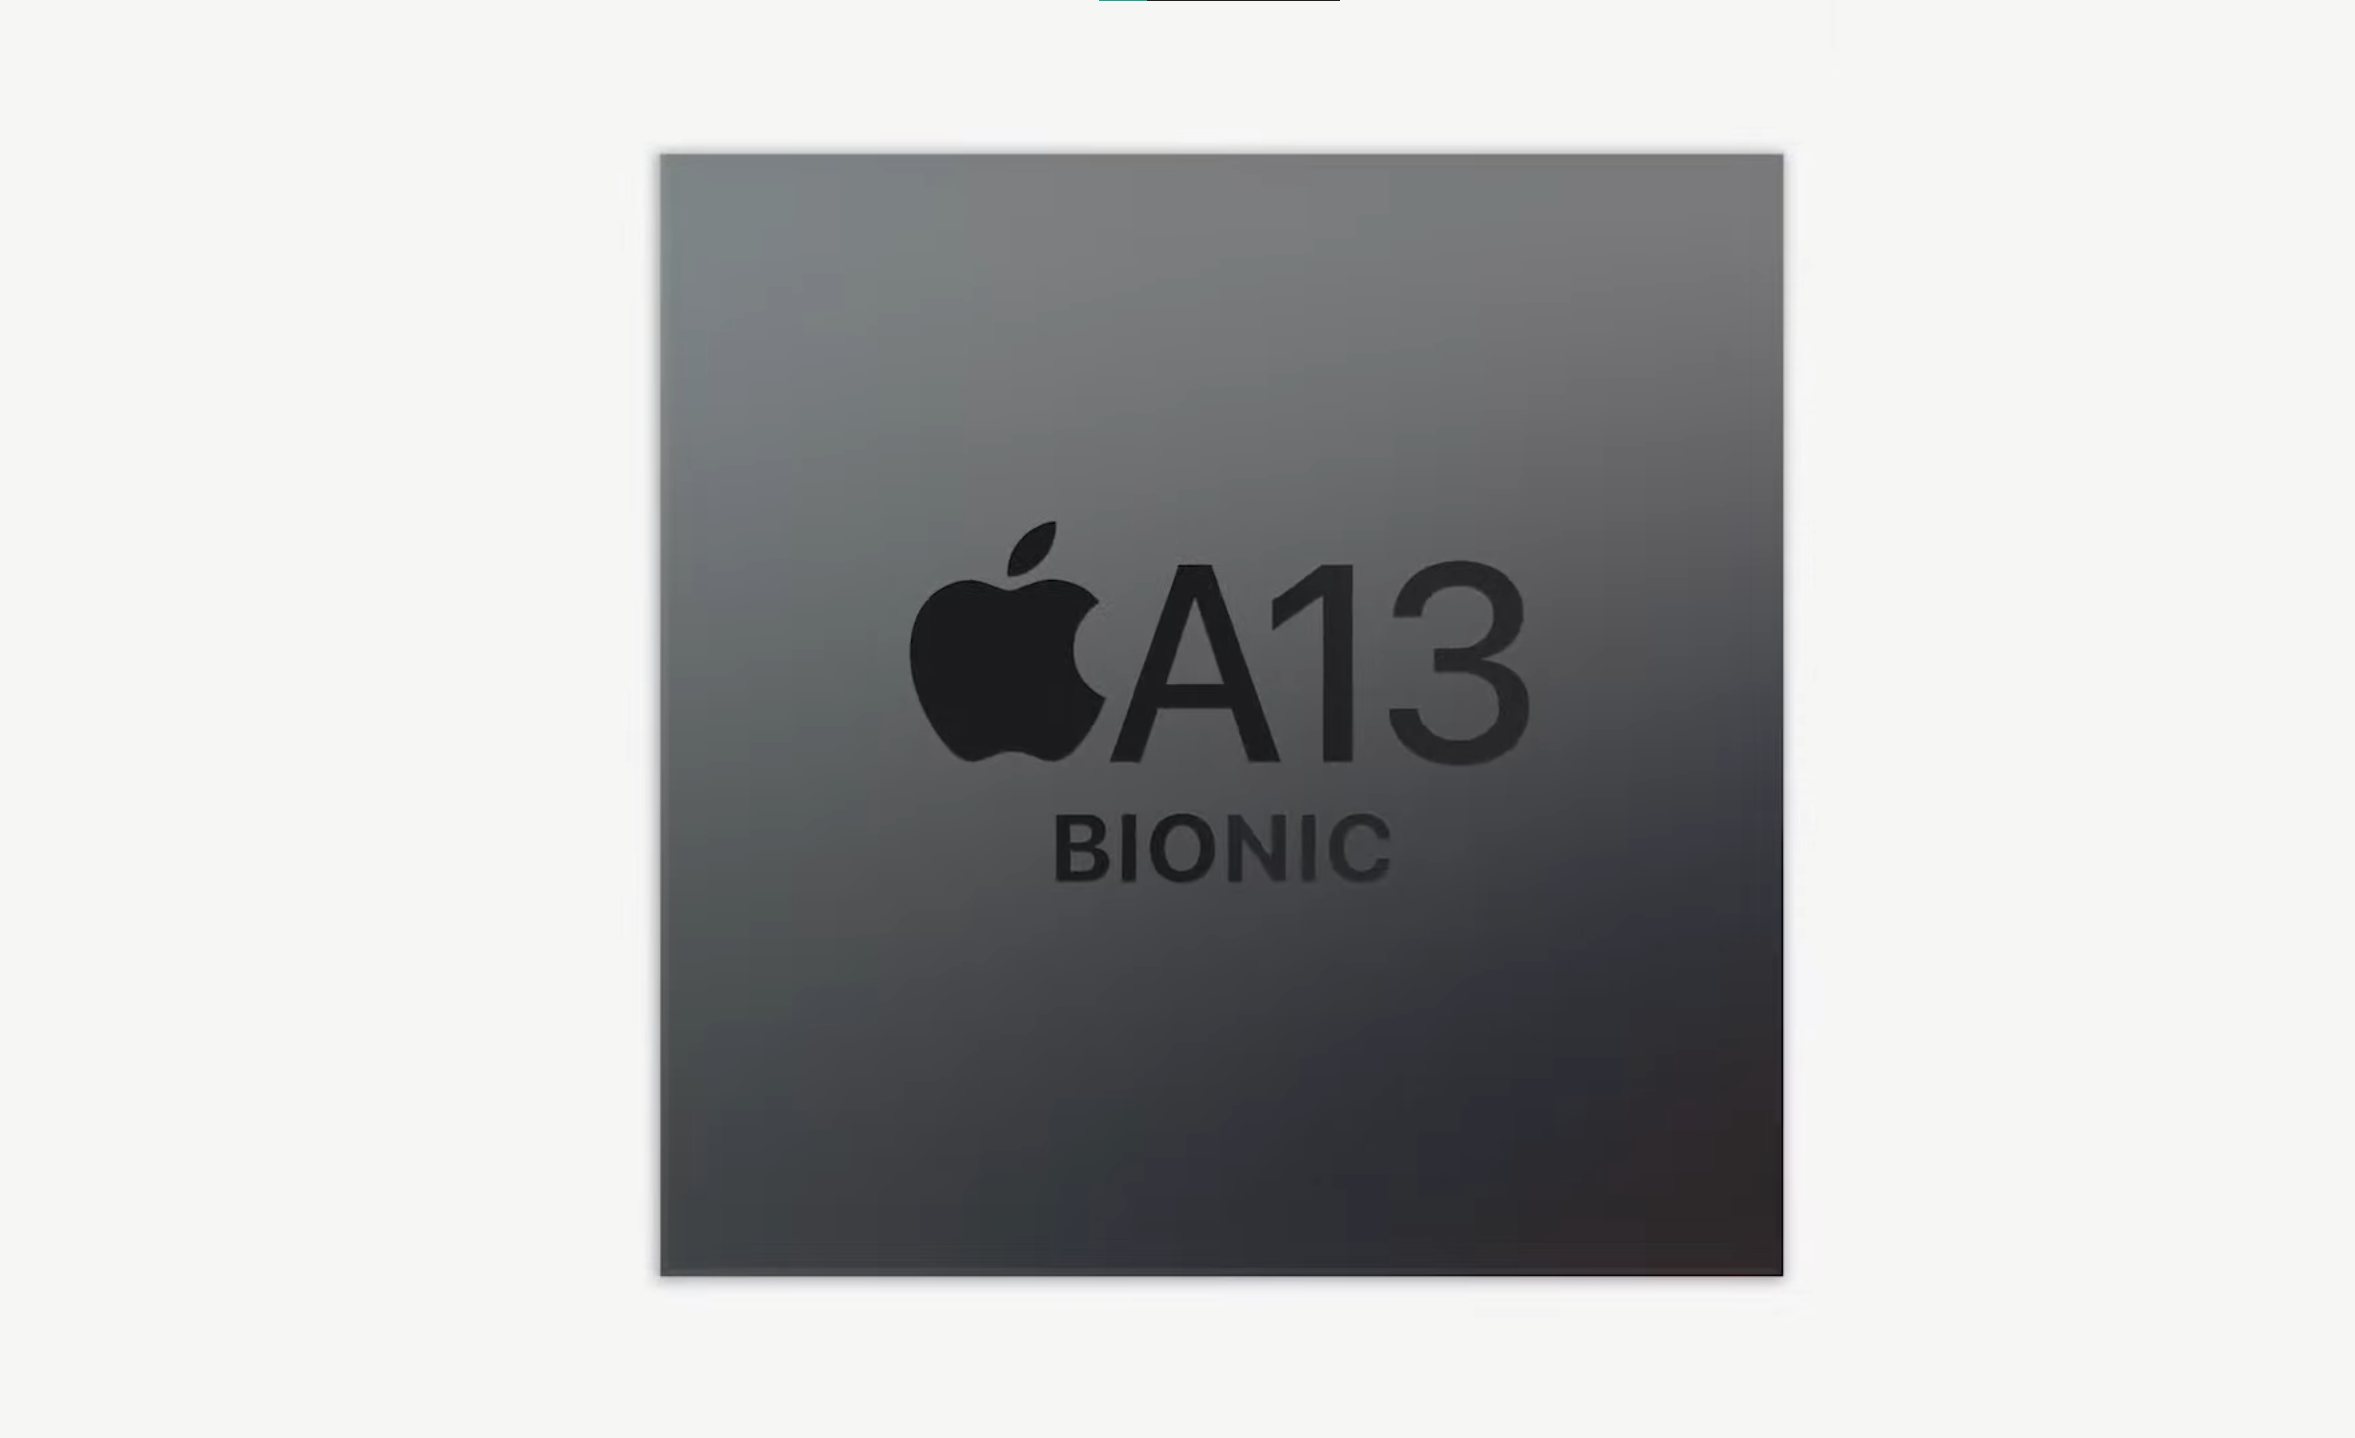 A13 Bionic er brikken vi finner på innsiden av iPad Mini og iPad. Den skal være betydelig raskere enn forrige generasjon.